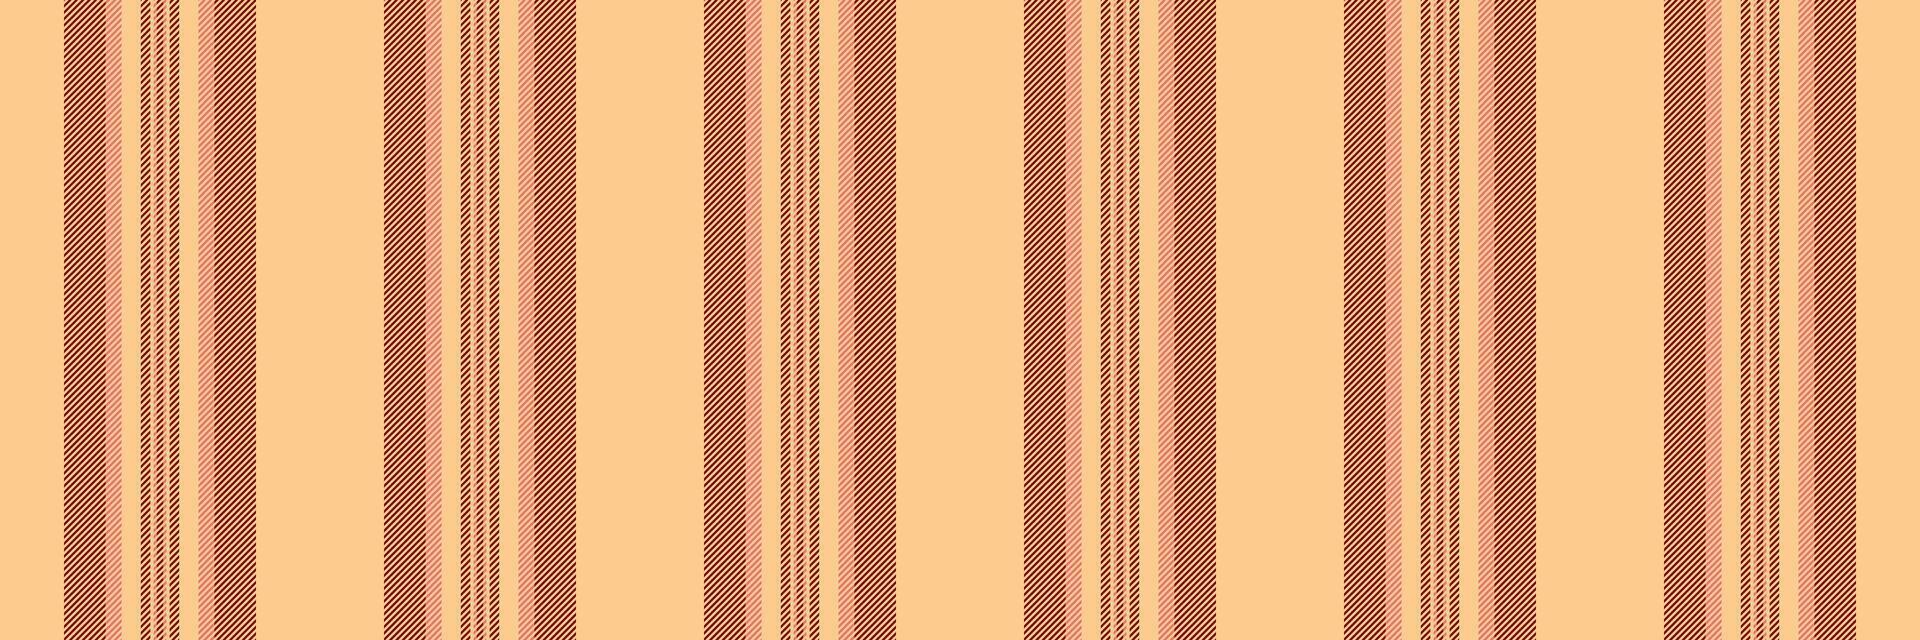 kleding kleding stof patroon , ornamentiek textiel naadloos verticaal. conceptuele achtergrond lijnen structuur streep in oranje en kastanjebruin kleuren. vector